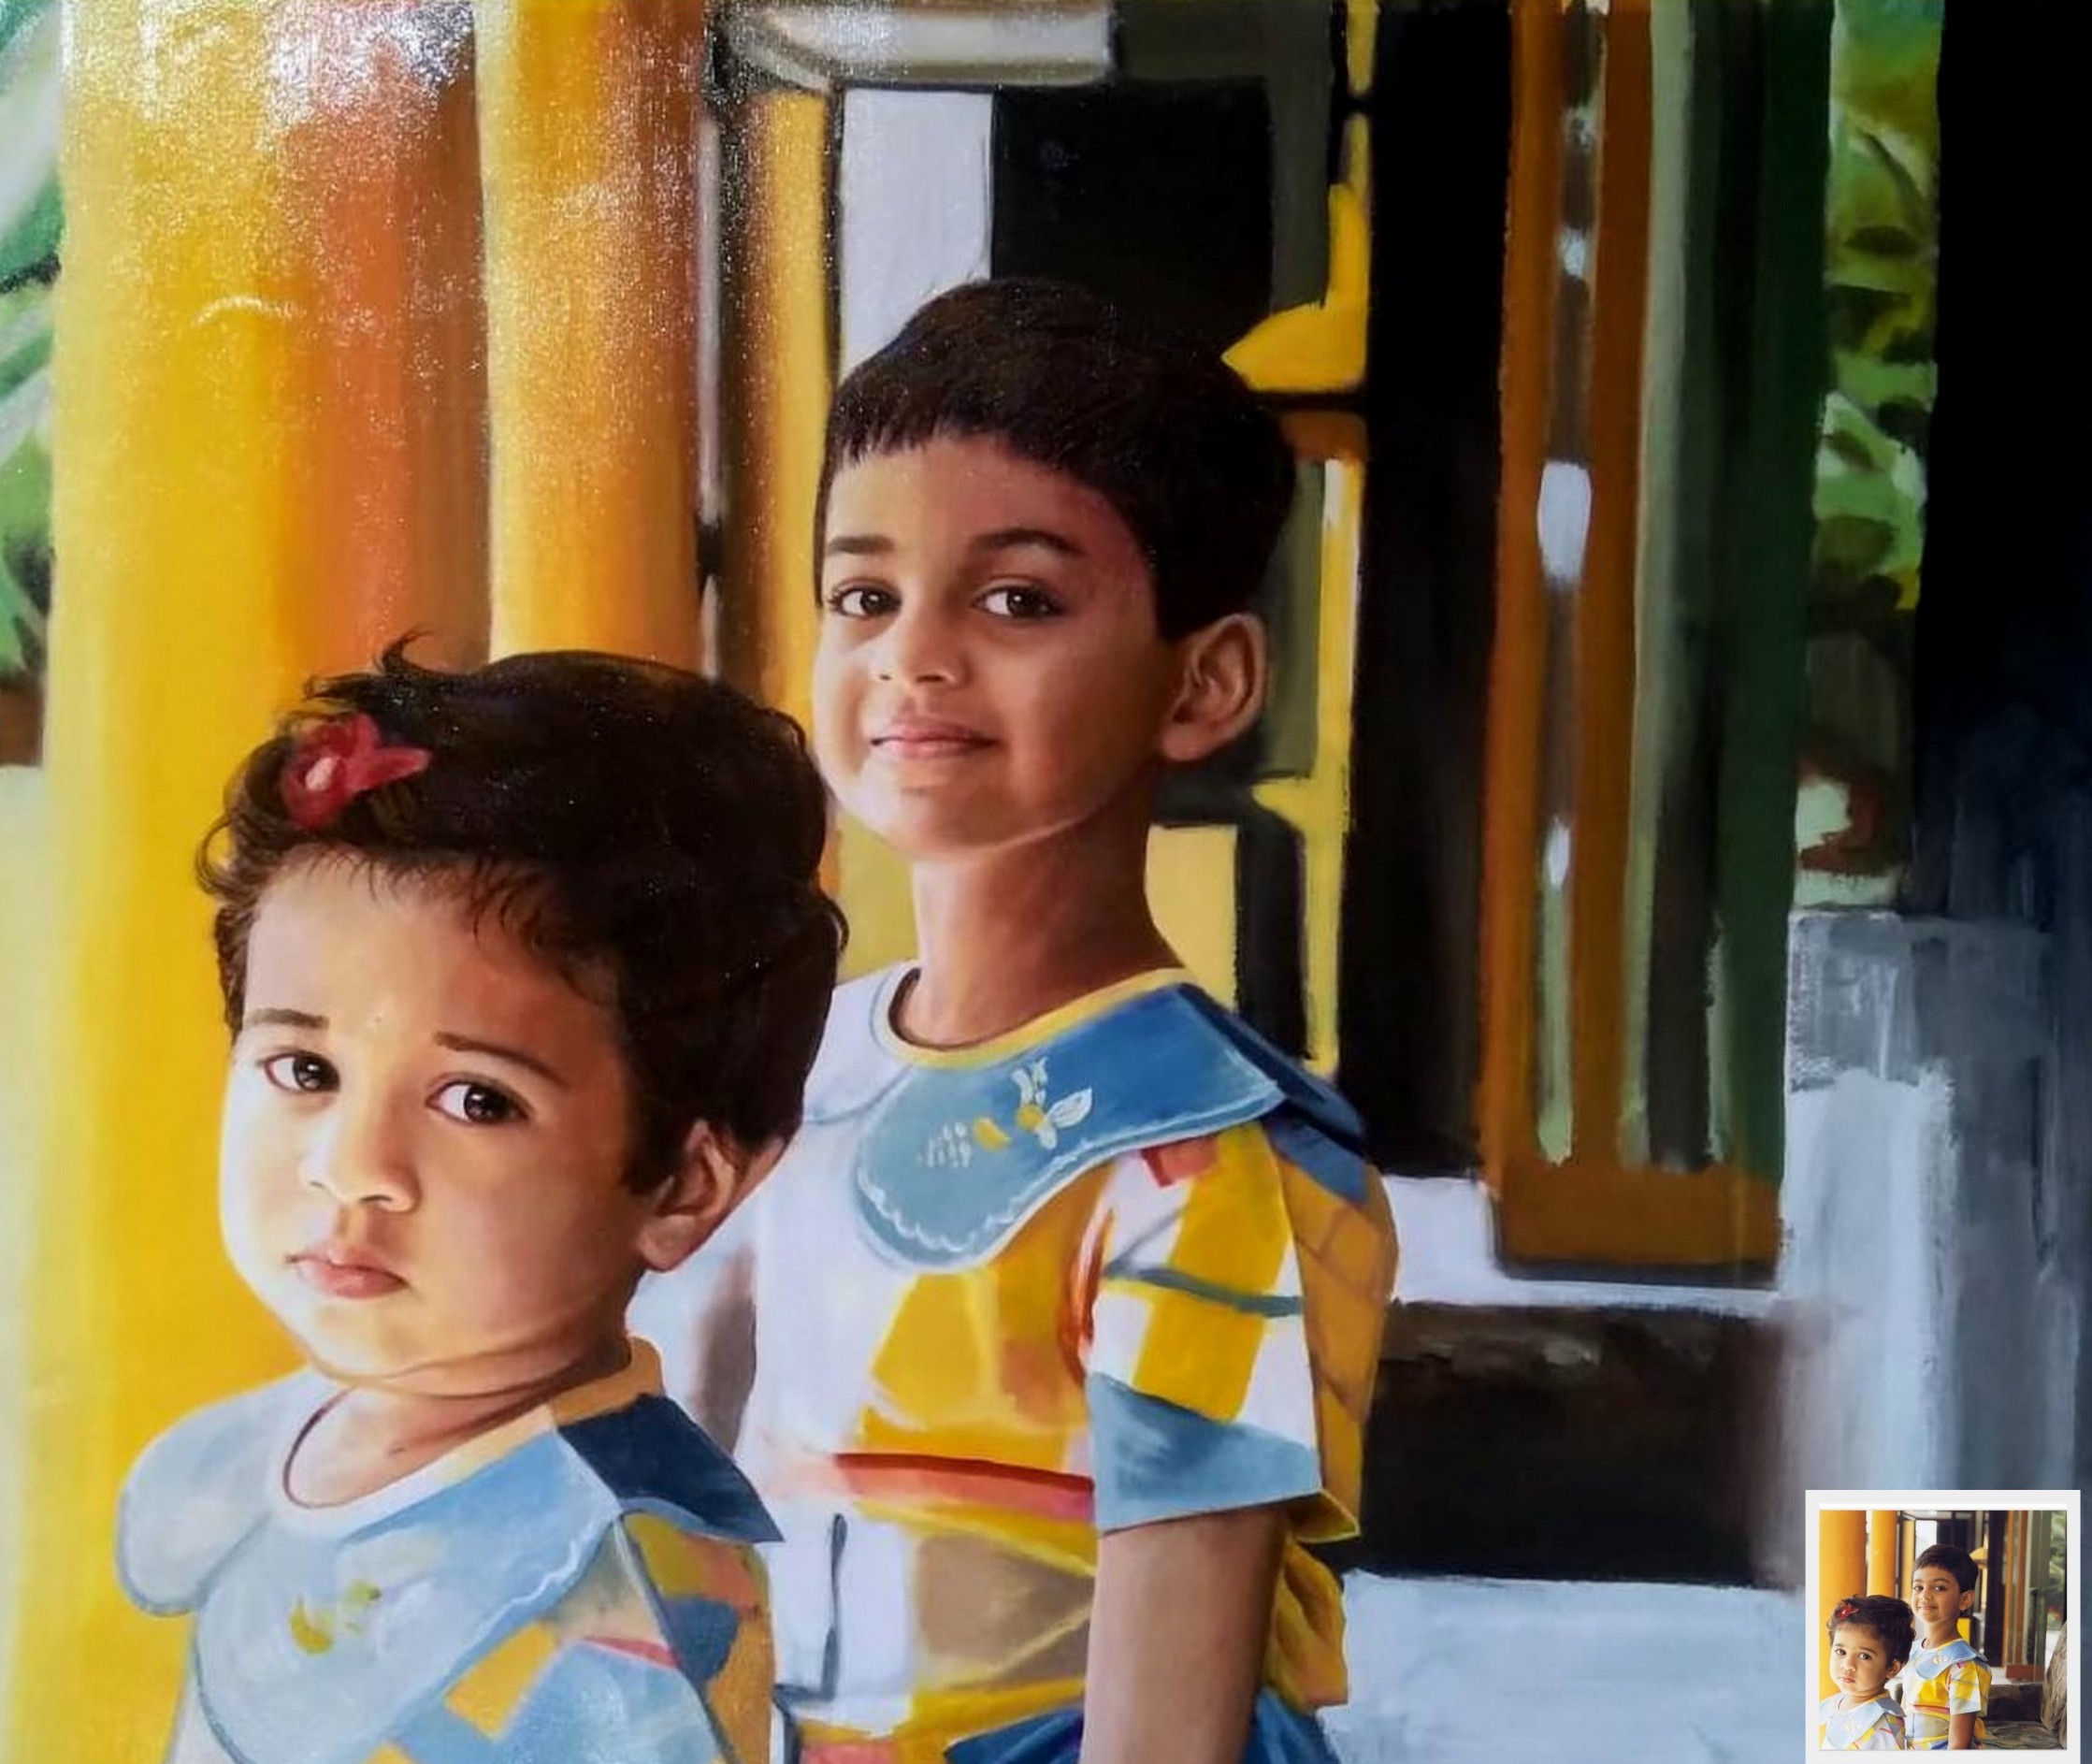 children oil portrait, photo into painting, painting from photo, photo painting gift, photo into art